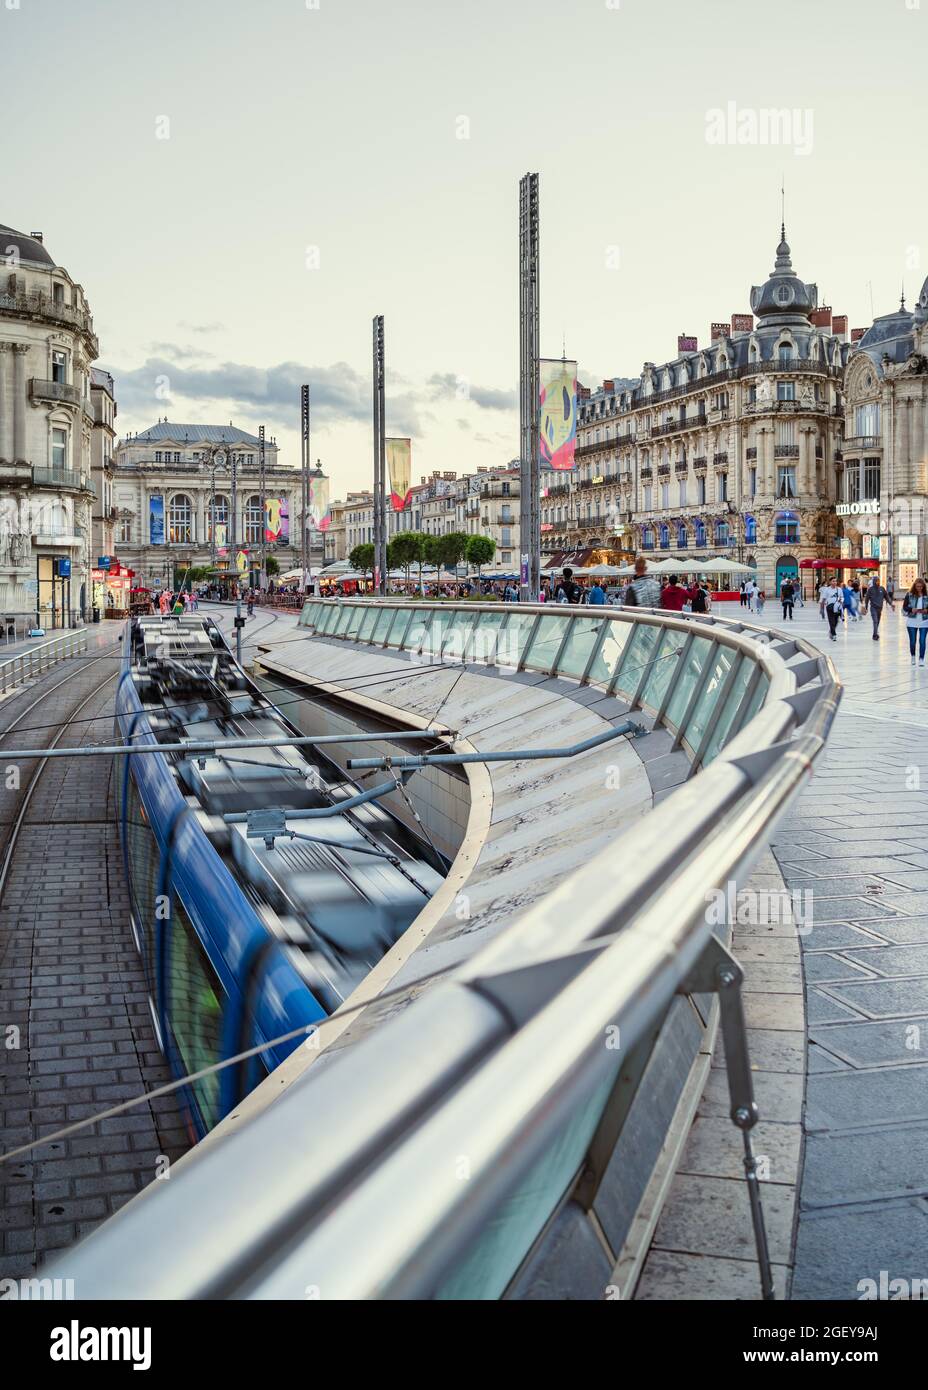 Montpellier, France, August 4, 2021. Blue tram arrives at the Place de la Comédie in Montpellier. Slow exposure photography. Motion blur. Stock Photo